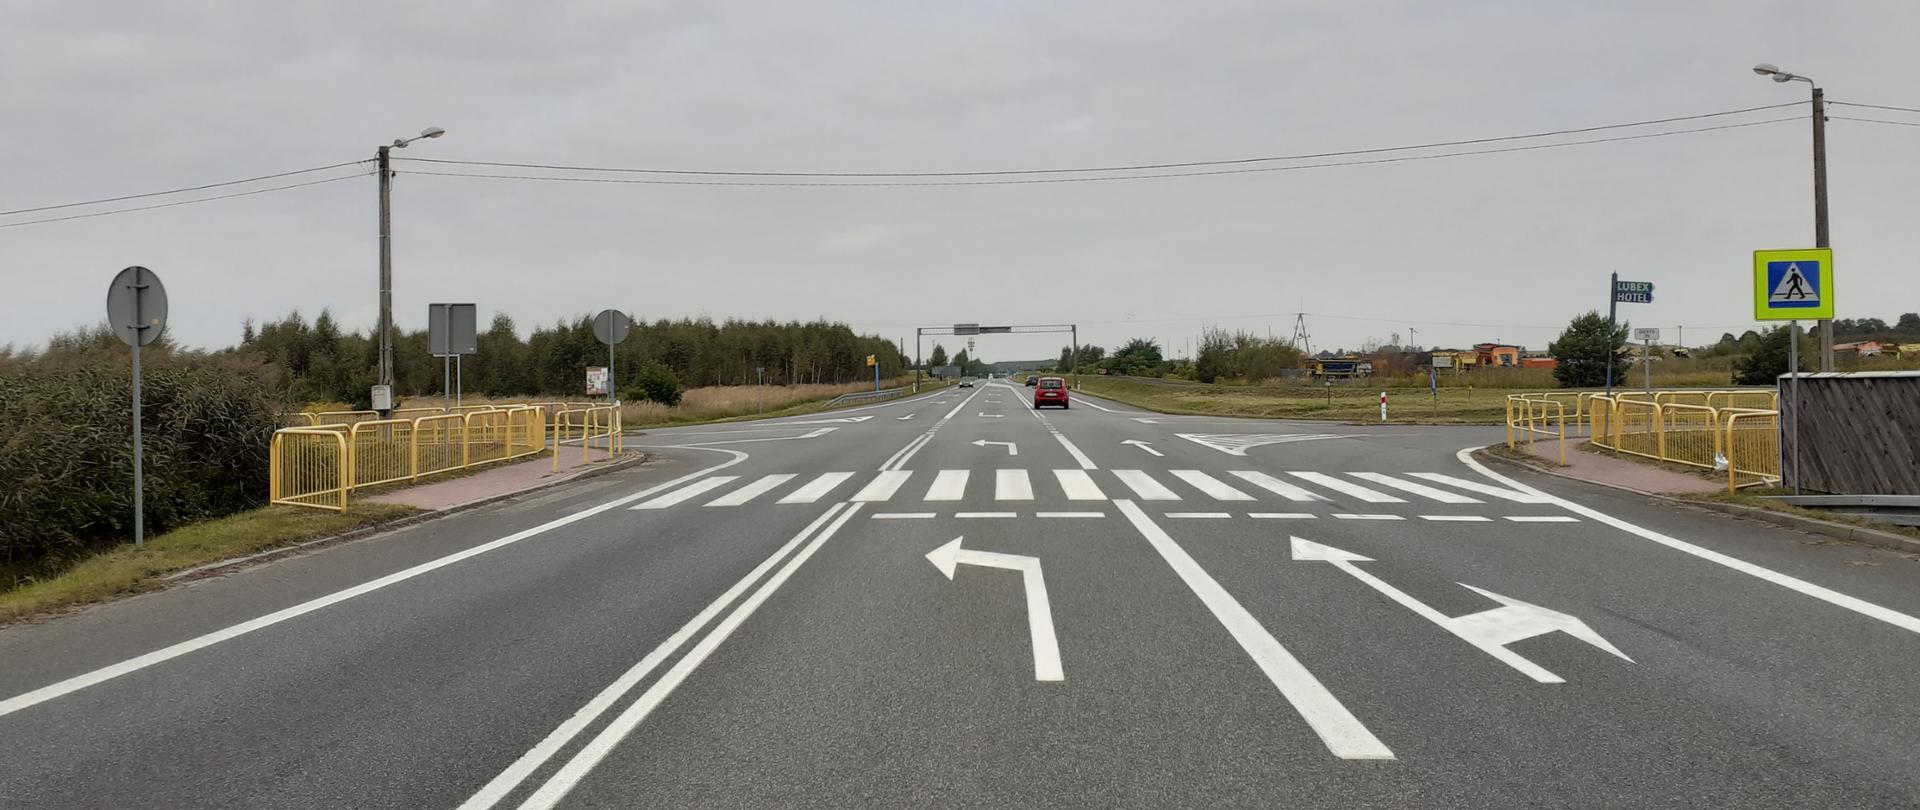 Fotografia przedstawia przejście dla pieszych przez 3-paswą drogę krajową nr 1 przed skrzyżowaniem w Lublińcu. Chodnikowe dojście do przejścia dla pieszych zabezpieczono barierami odgradzającymi w kolorze żółtym. Na drodze widoczne poruszające się pojazdy osobowe. Przejście oznakowane jest znakiem D-6 "przejście dla pieszych" na żółtym fluorescencyjnym tle. 